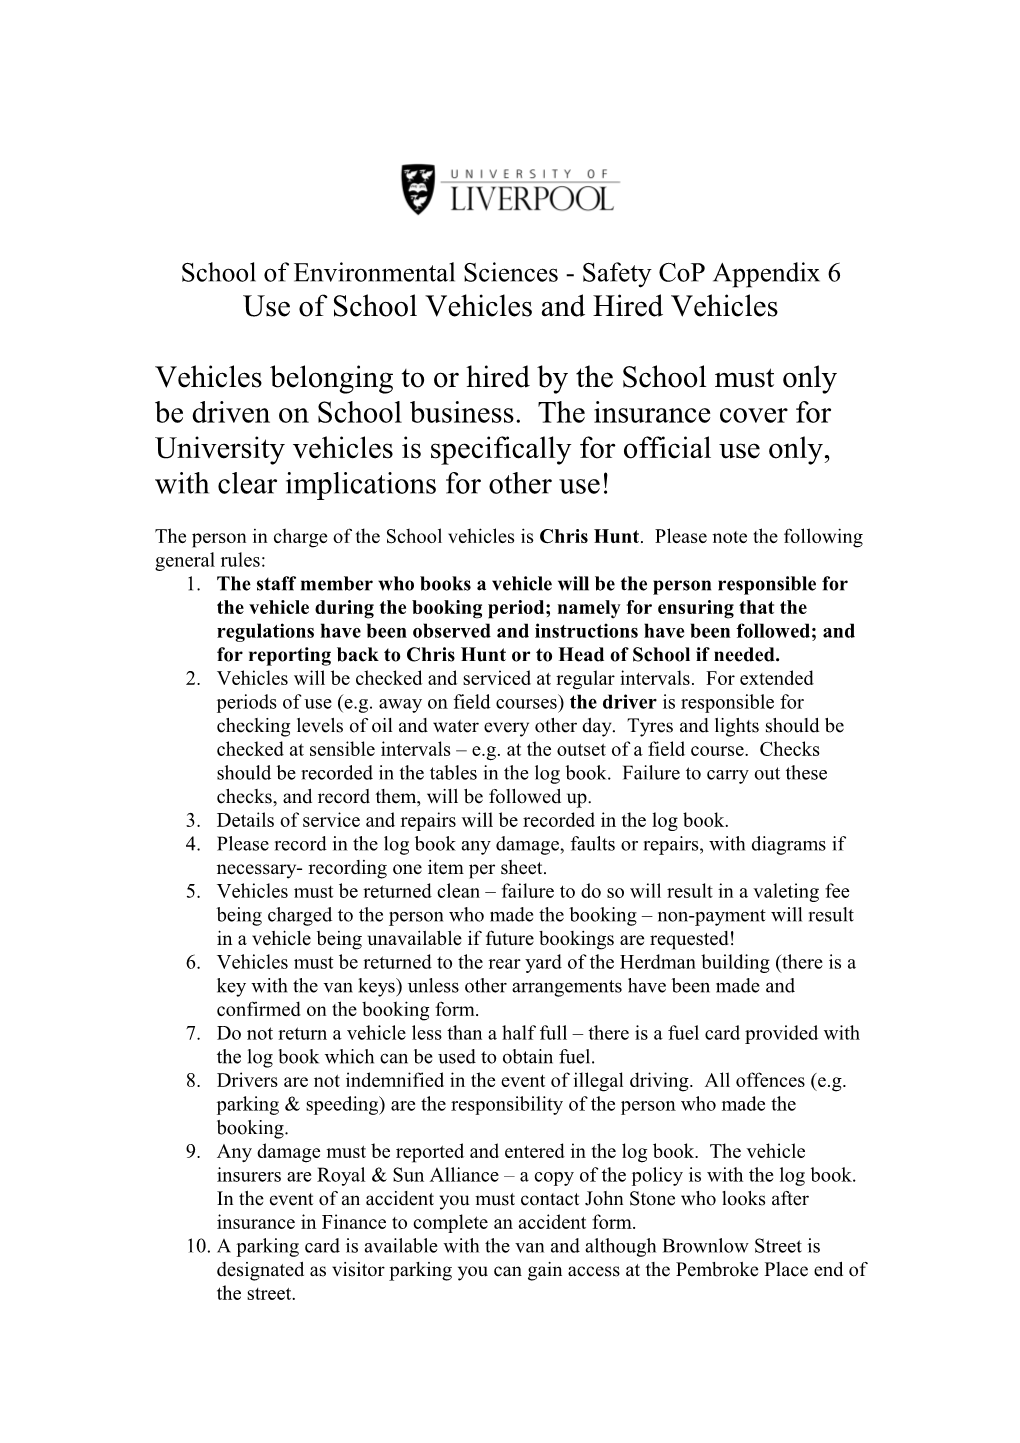 School of Environmental Sciences- Safety Cop Appendix 6